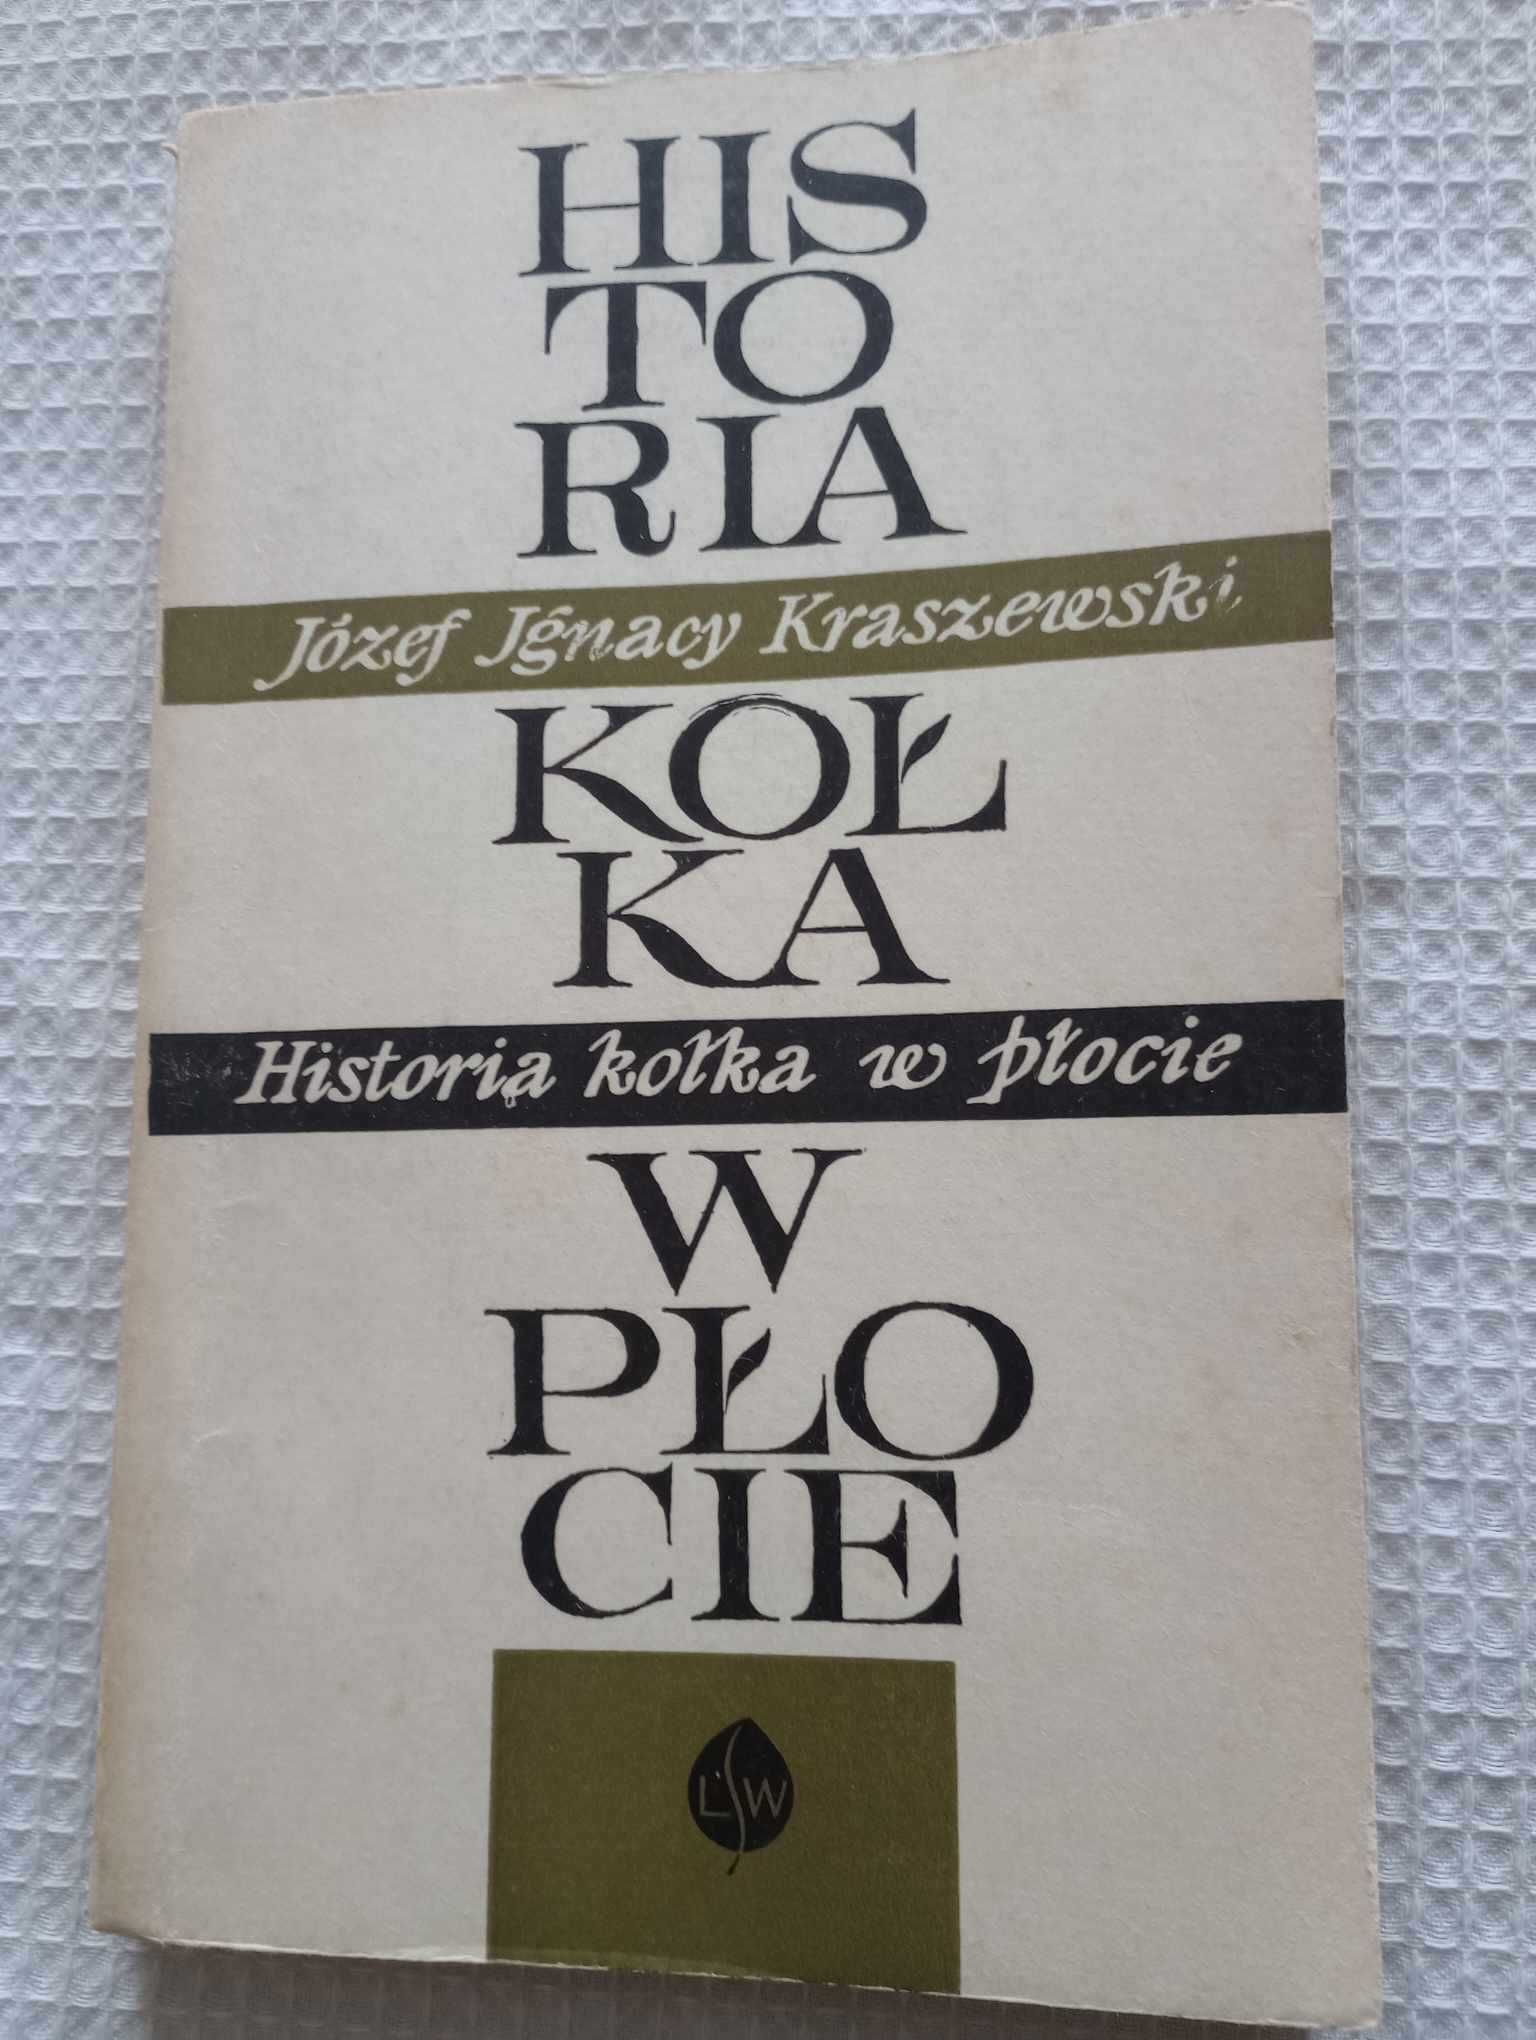 Historia kółka w płocie. J.I. Kraszewski